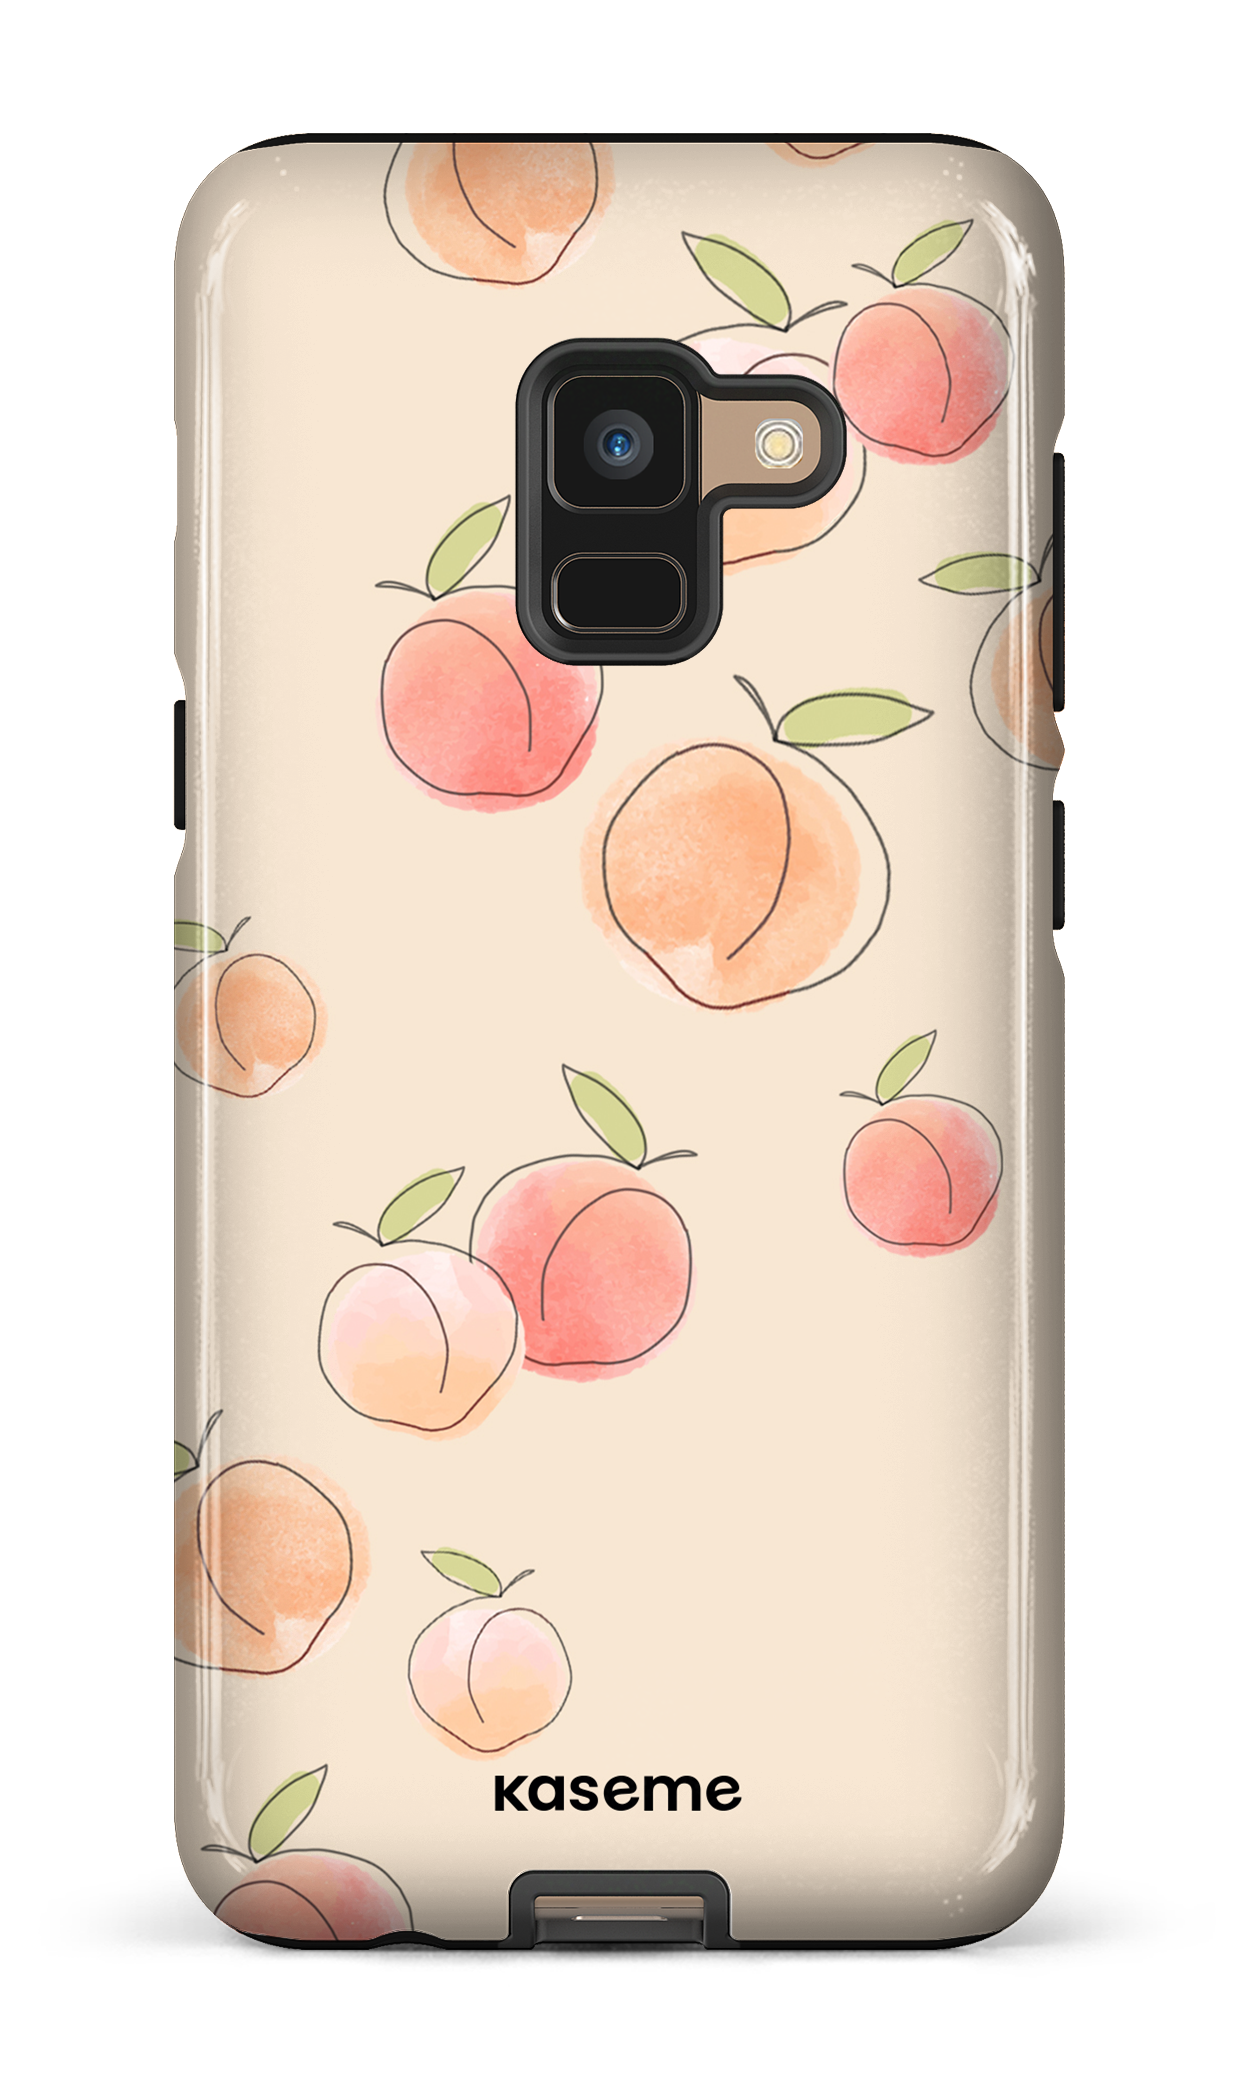 Peachy - Galaxy A8